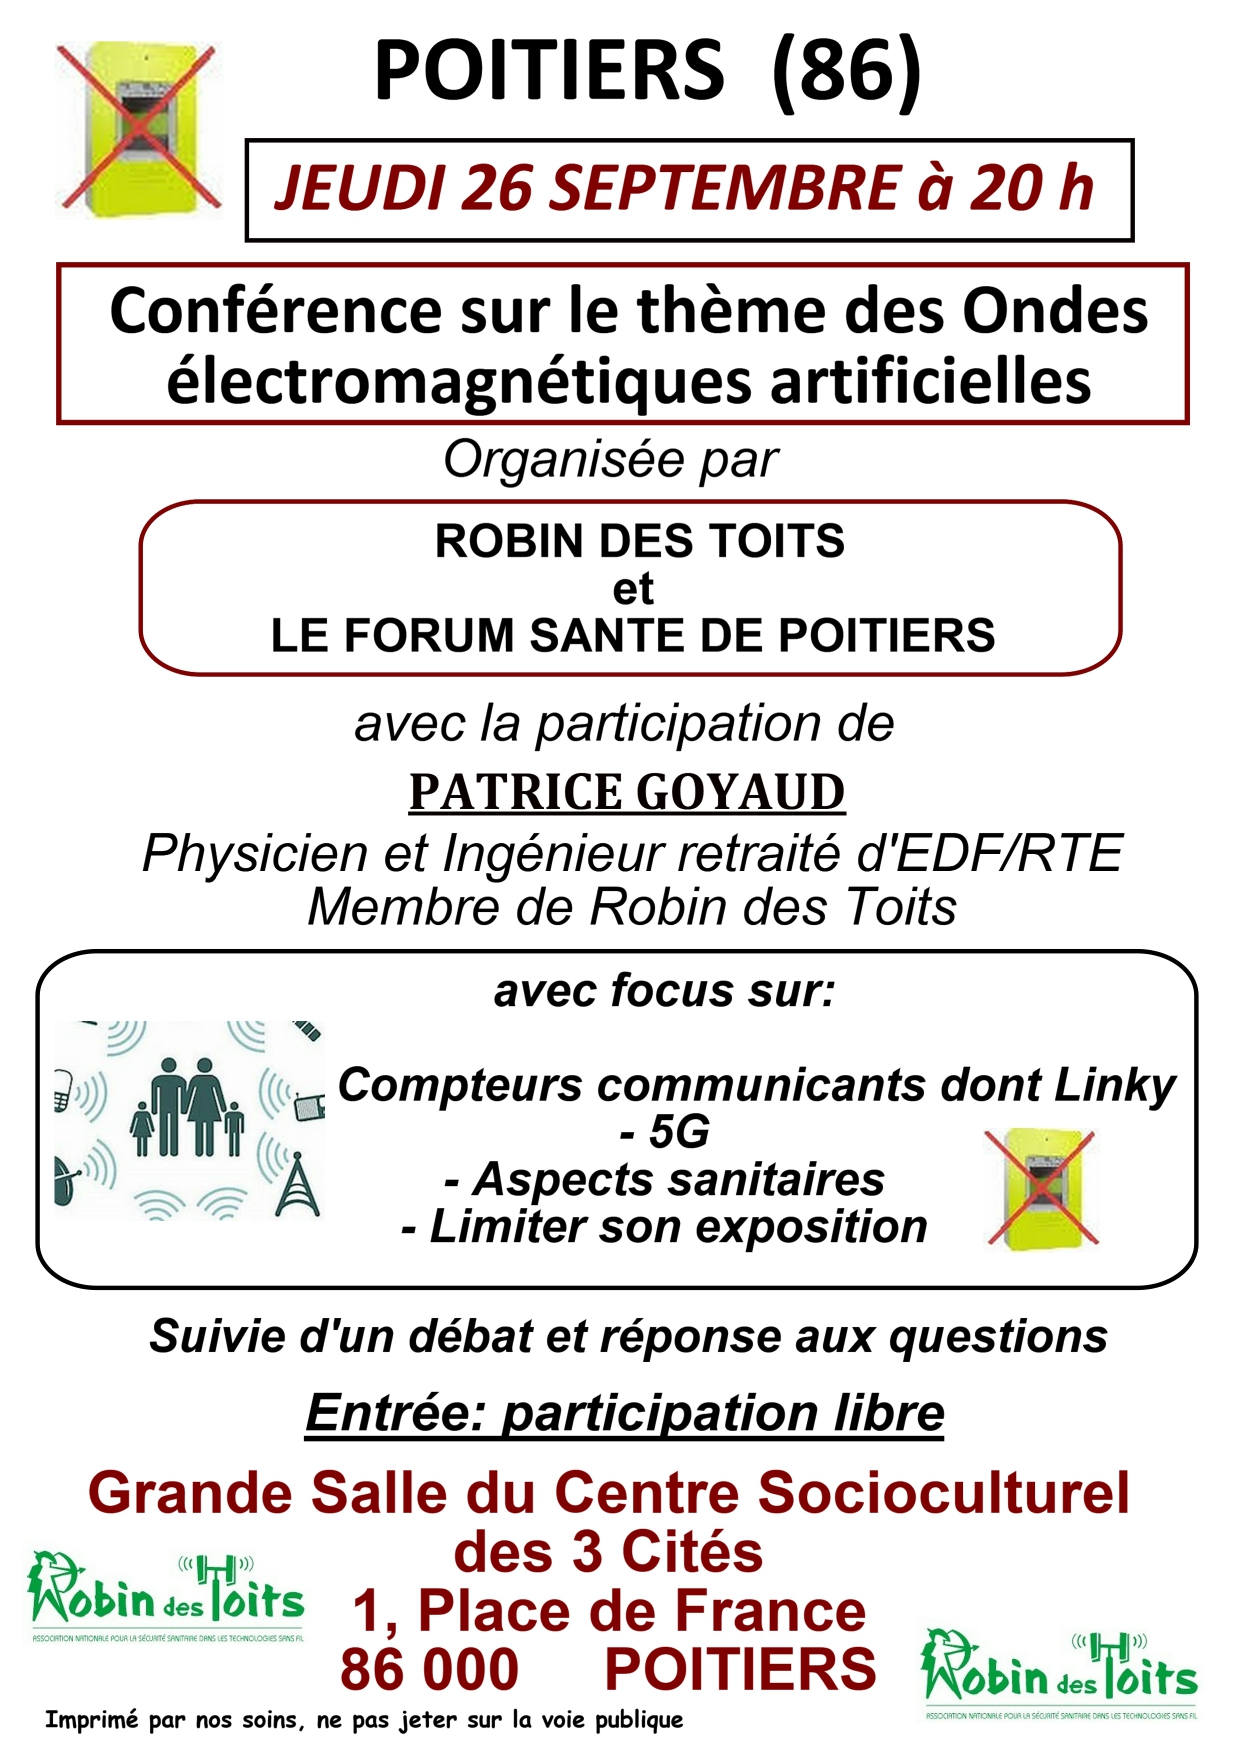 Poitiers - Jeudi 26 septembre 2019 à 20h00 : Conférence sur les ondes électromagnétiques artificielles, suivie d'un débat